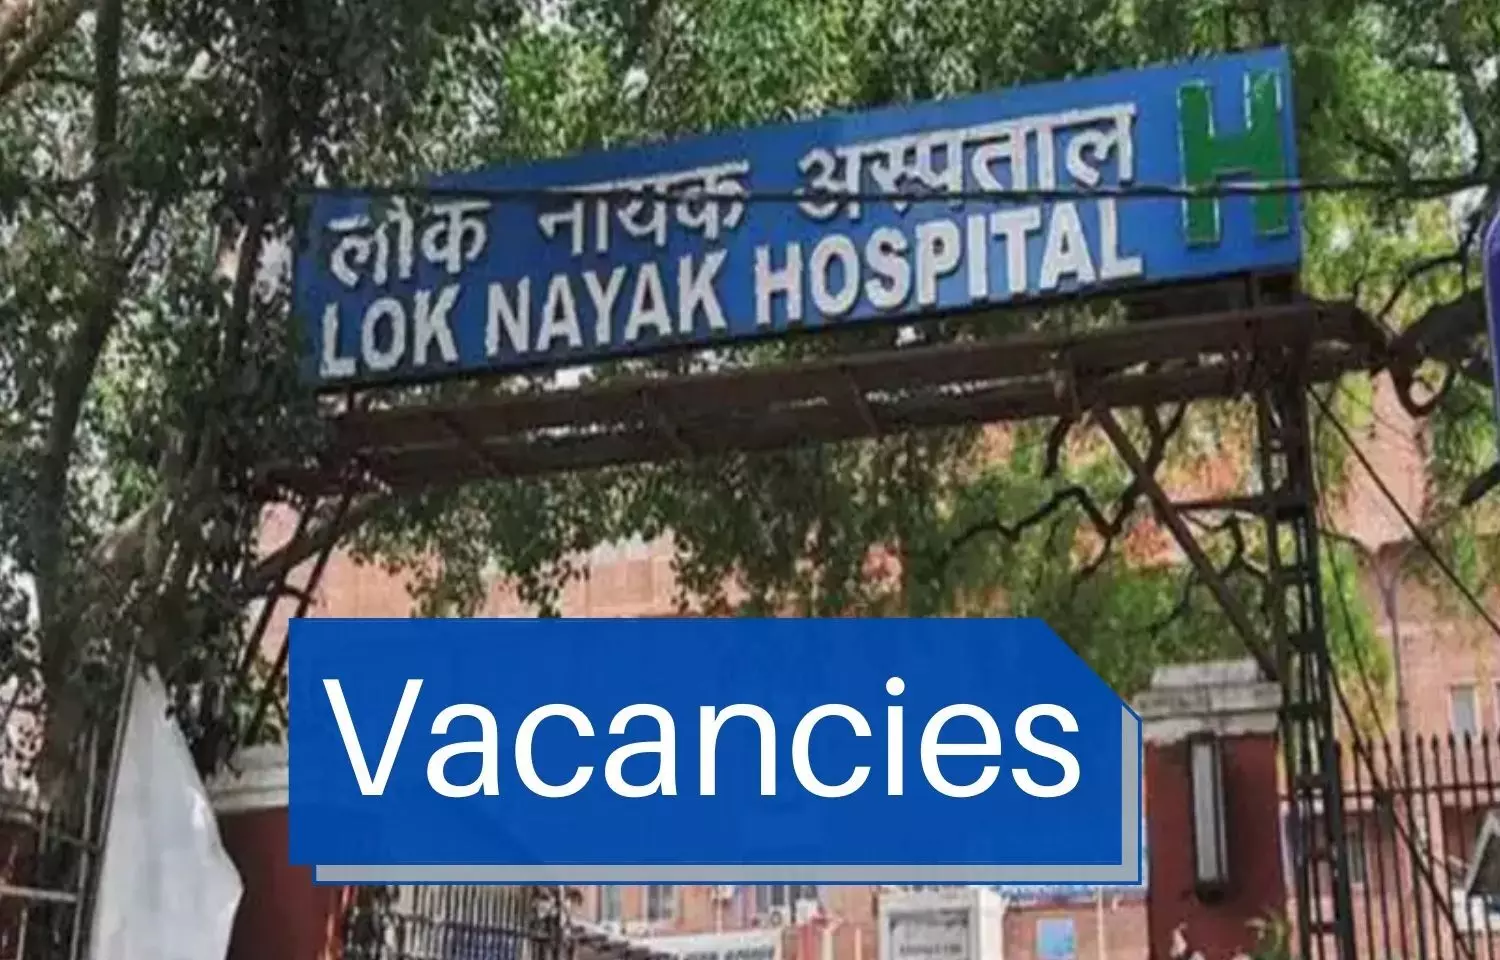 Walk In Interview at Lok Nayak Hospital Delhi for Junior Medical Officer Post, Check out Details